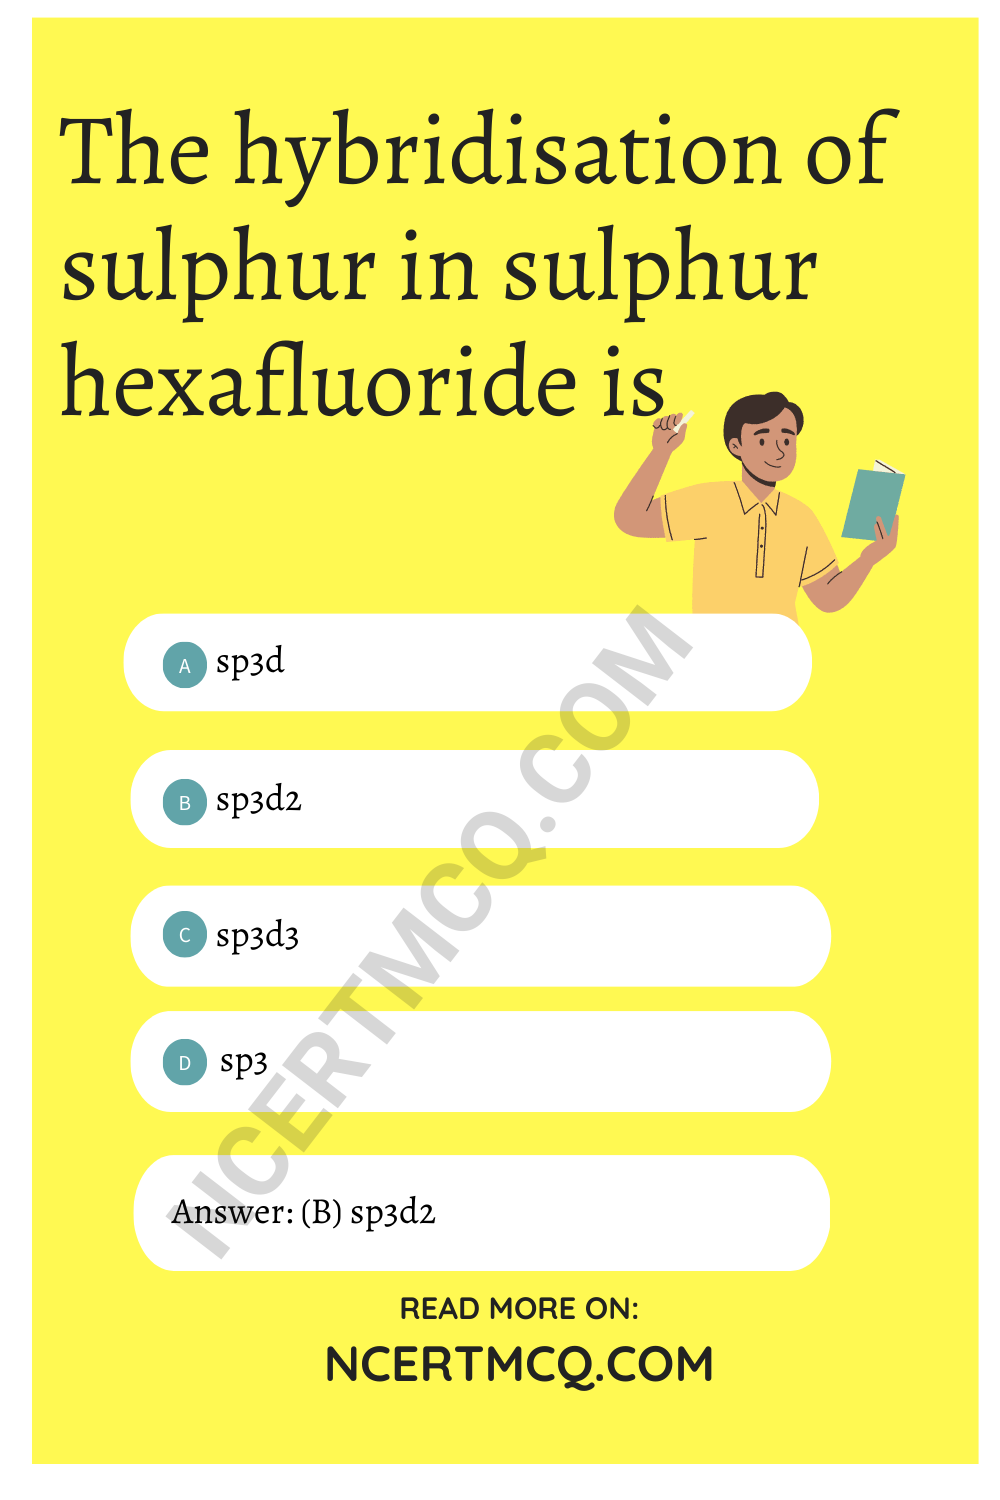 The hybridisation of sulphur in sulphur hexafluoride is